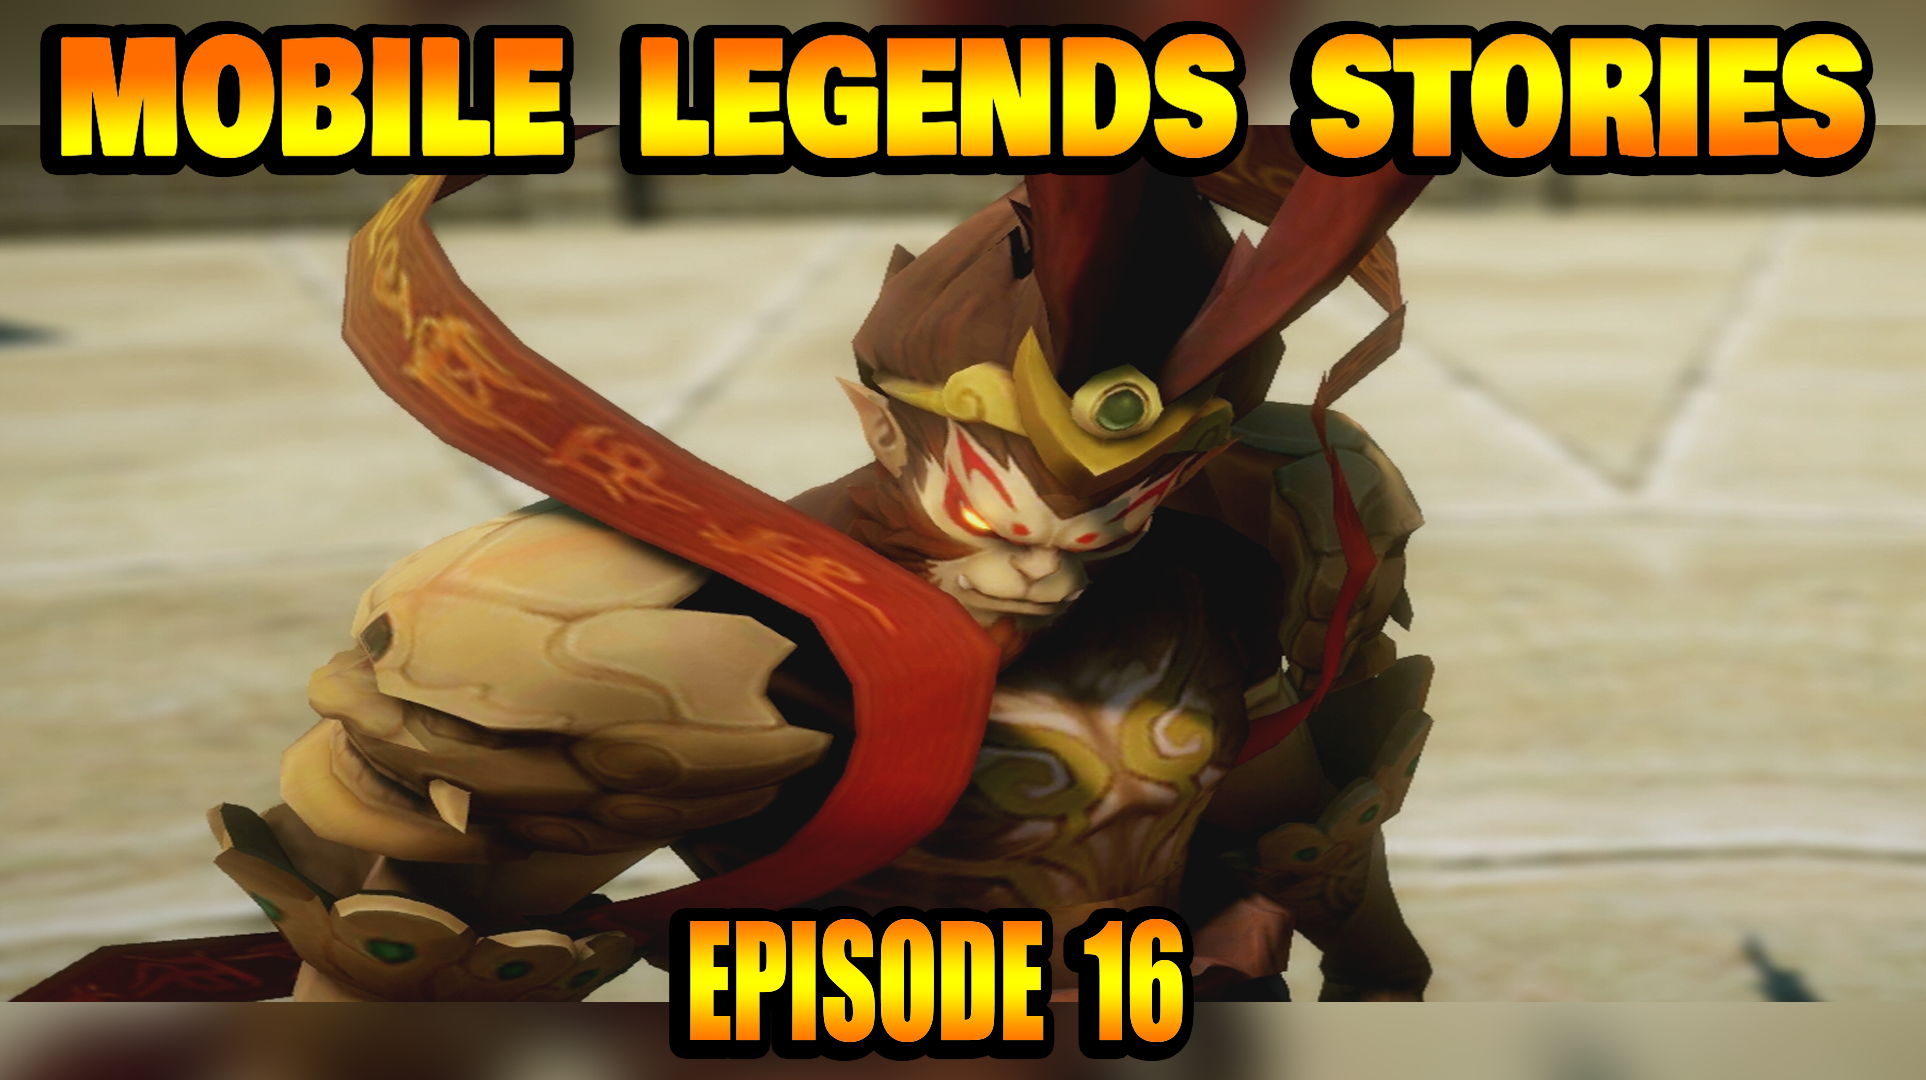 Mobile Legends Stories Episode 16